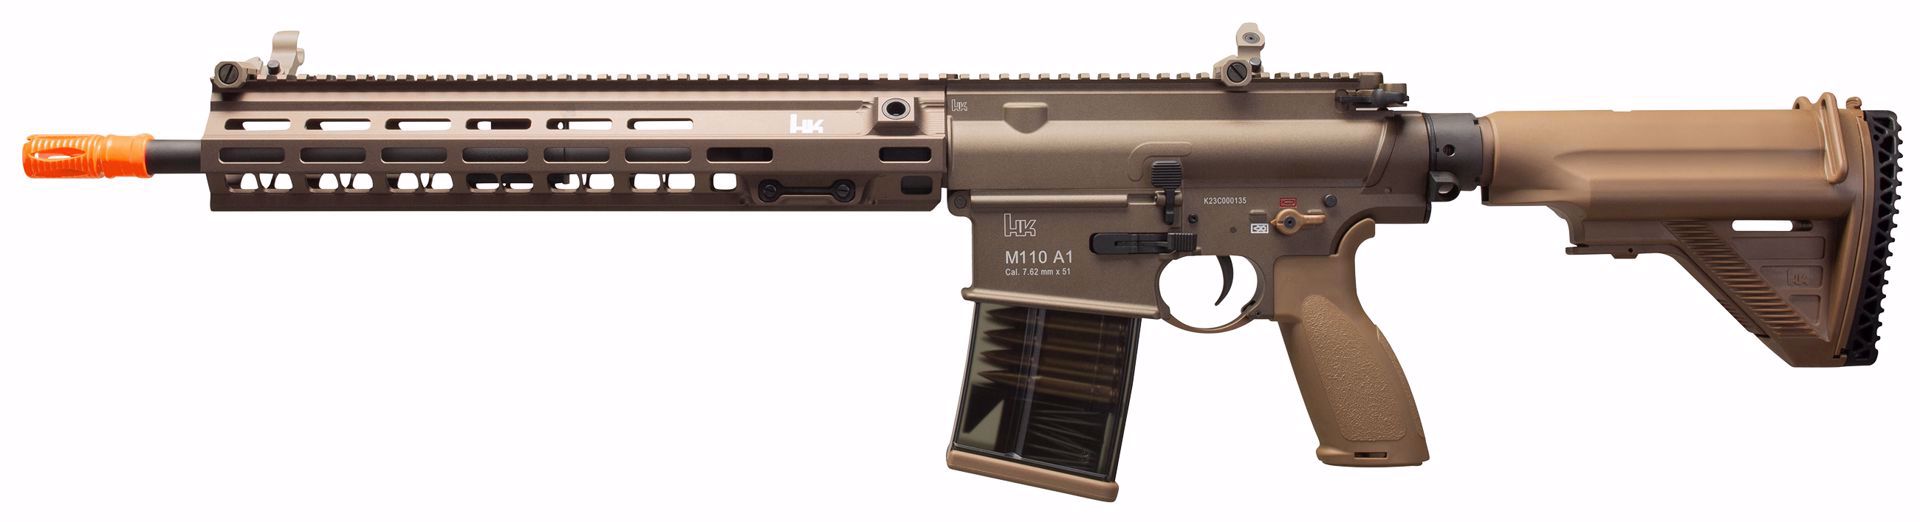 Elite Force HK M110A1 AEG Airsoft Gun (Tan) - ssairsoft.com